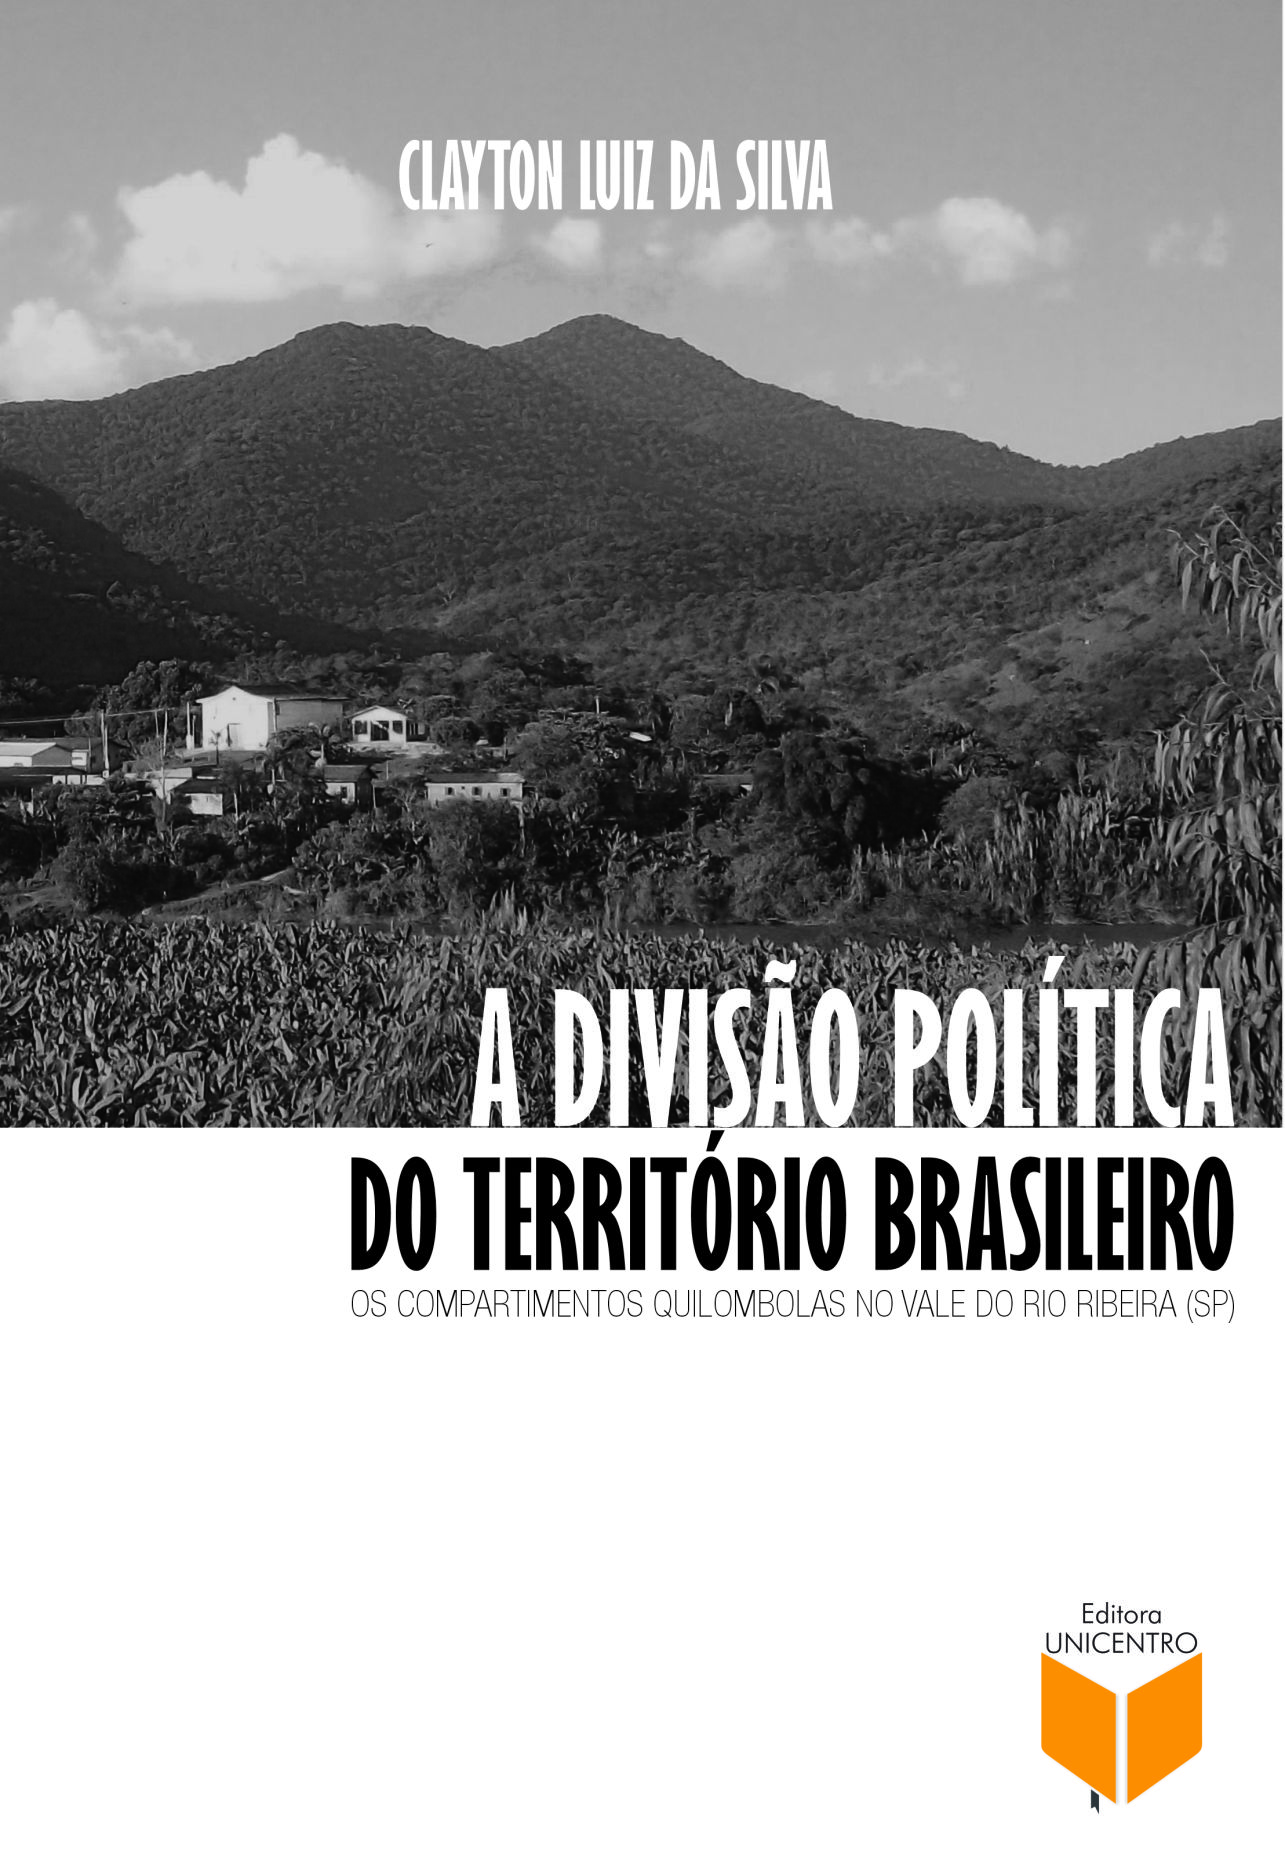 A divisão política do território brasileiro